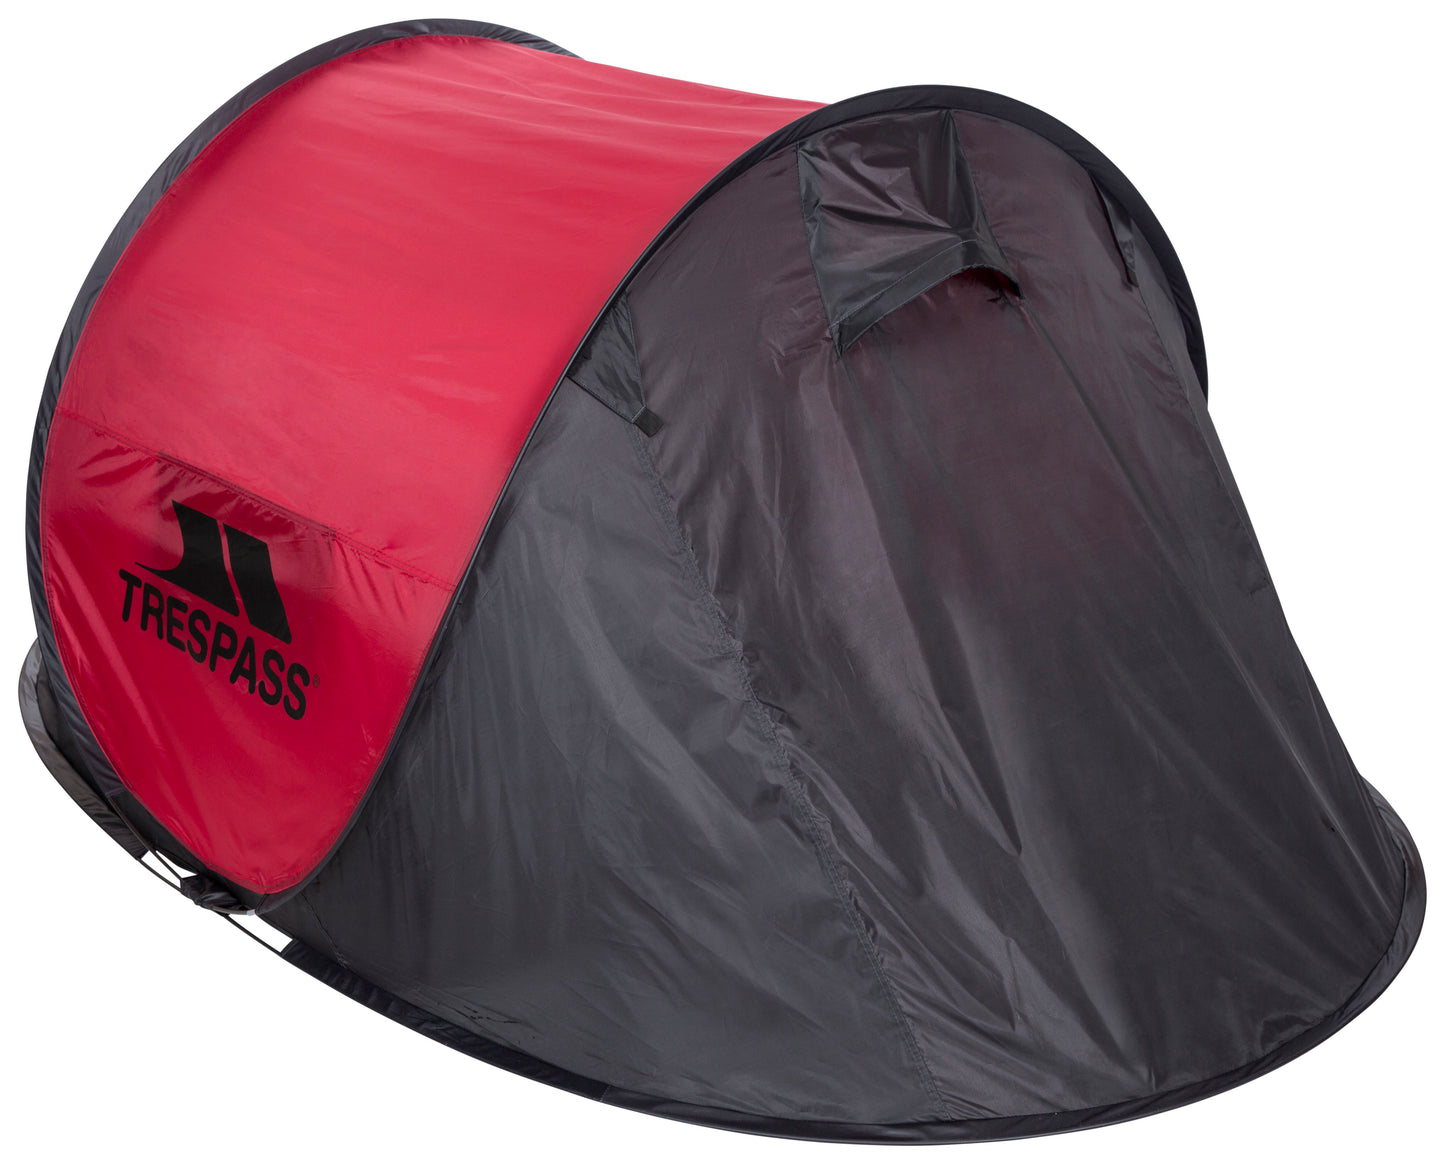 Trespass Swift Pop-Up Tent